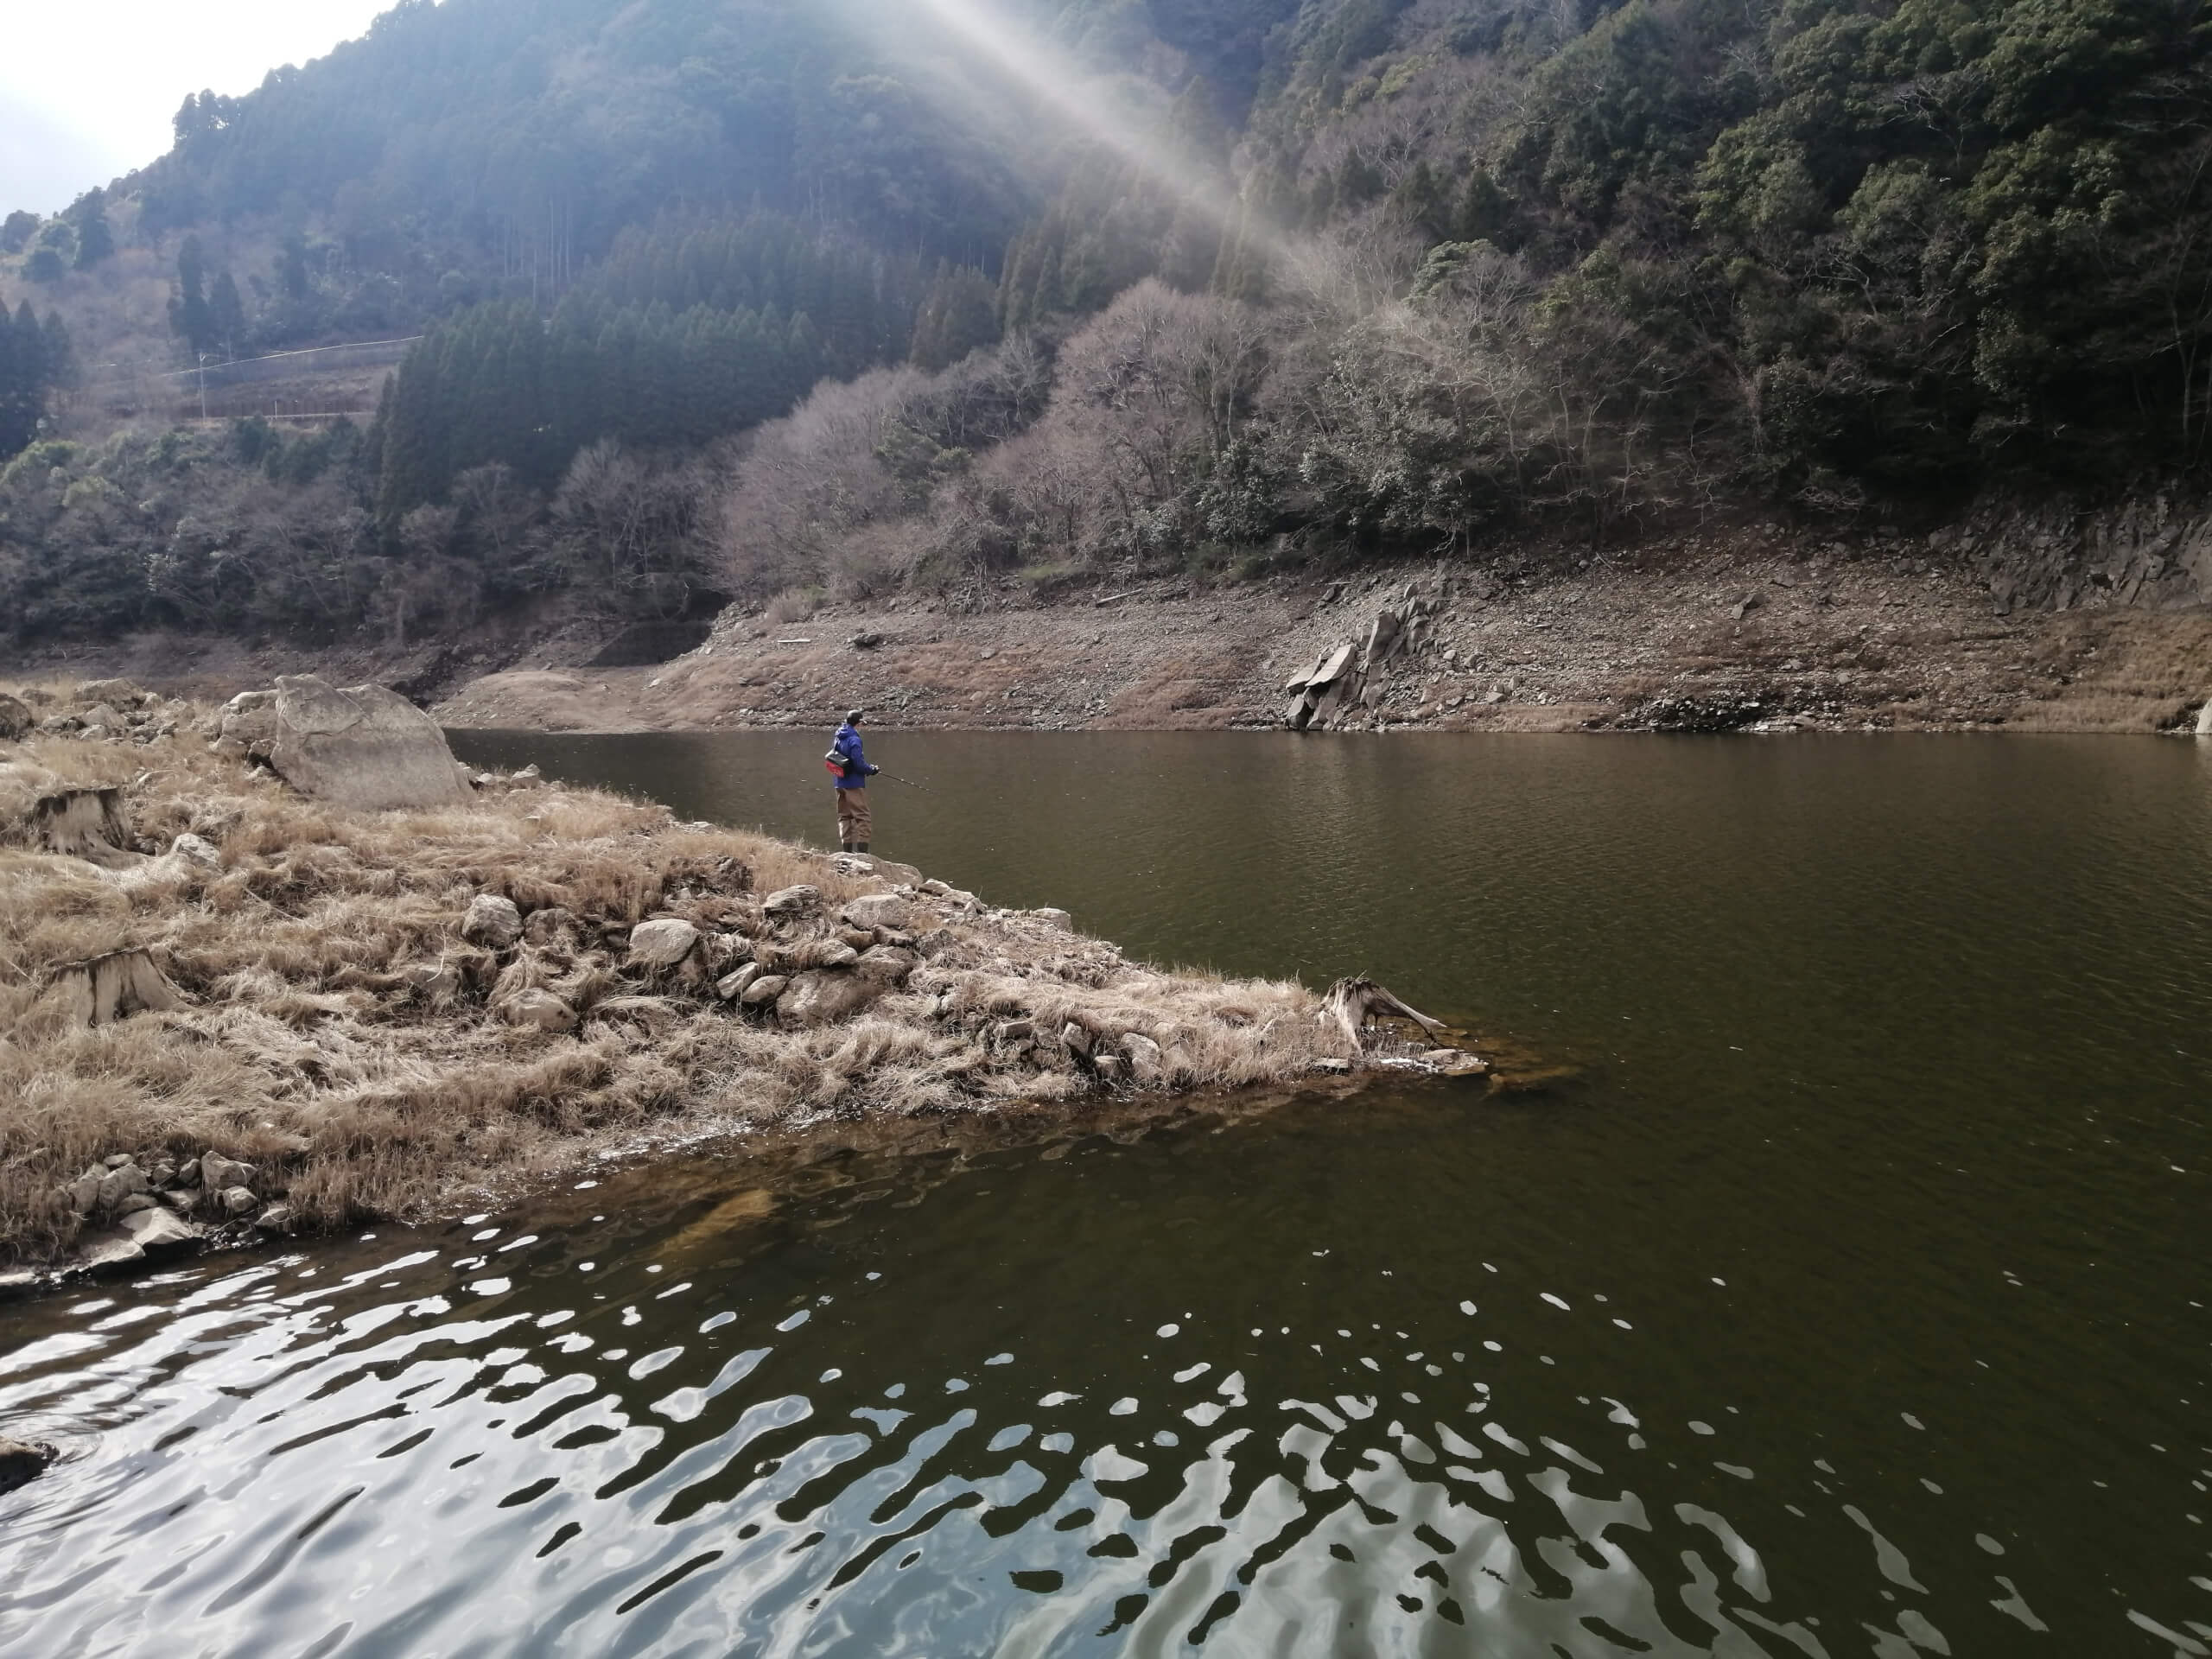 大分のダム湖でバス釣り 福岡大分熊本釣り 釣れない男の渓流釣りポイント紹介